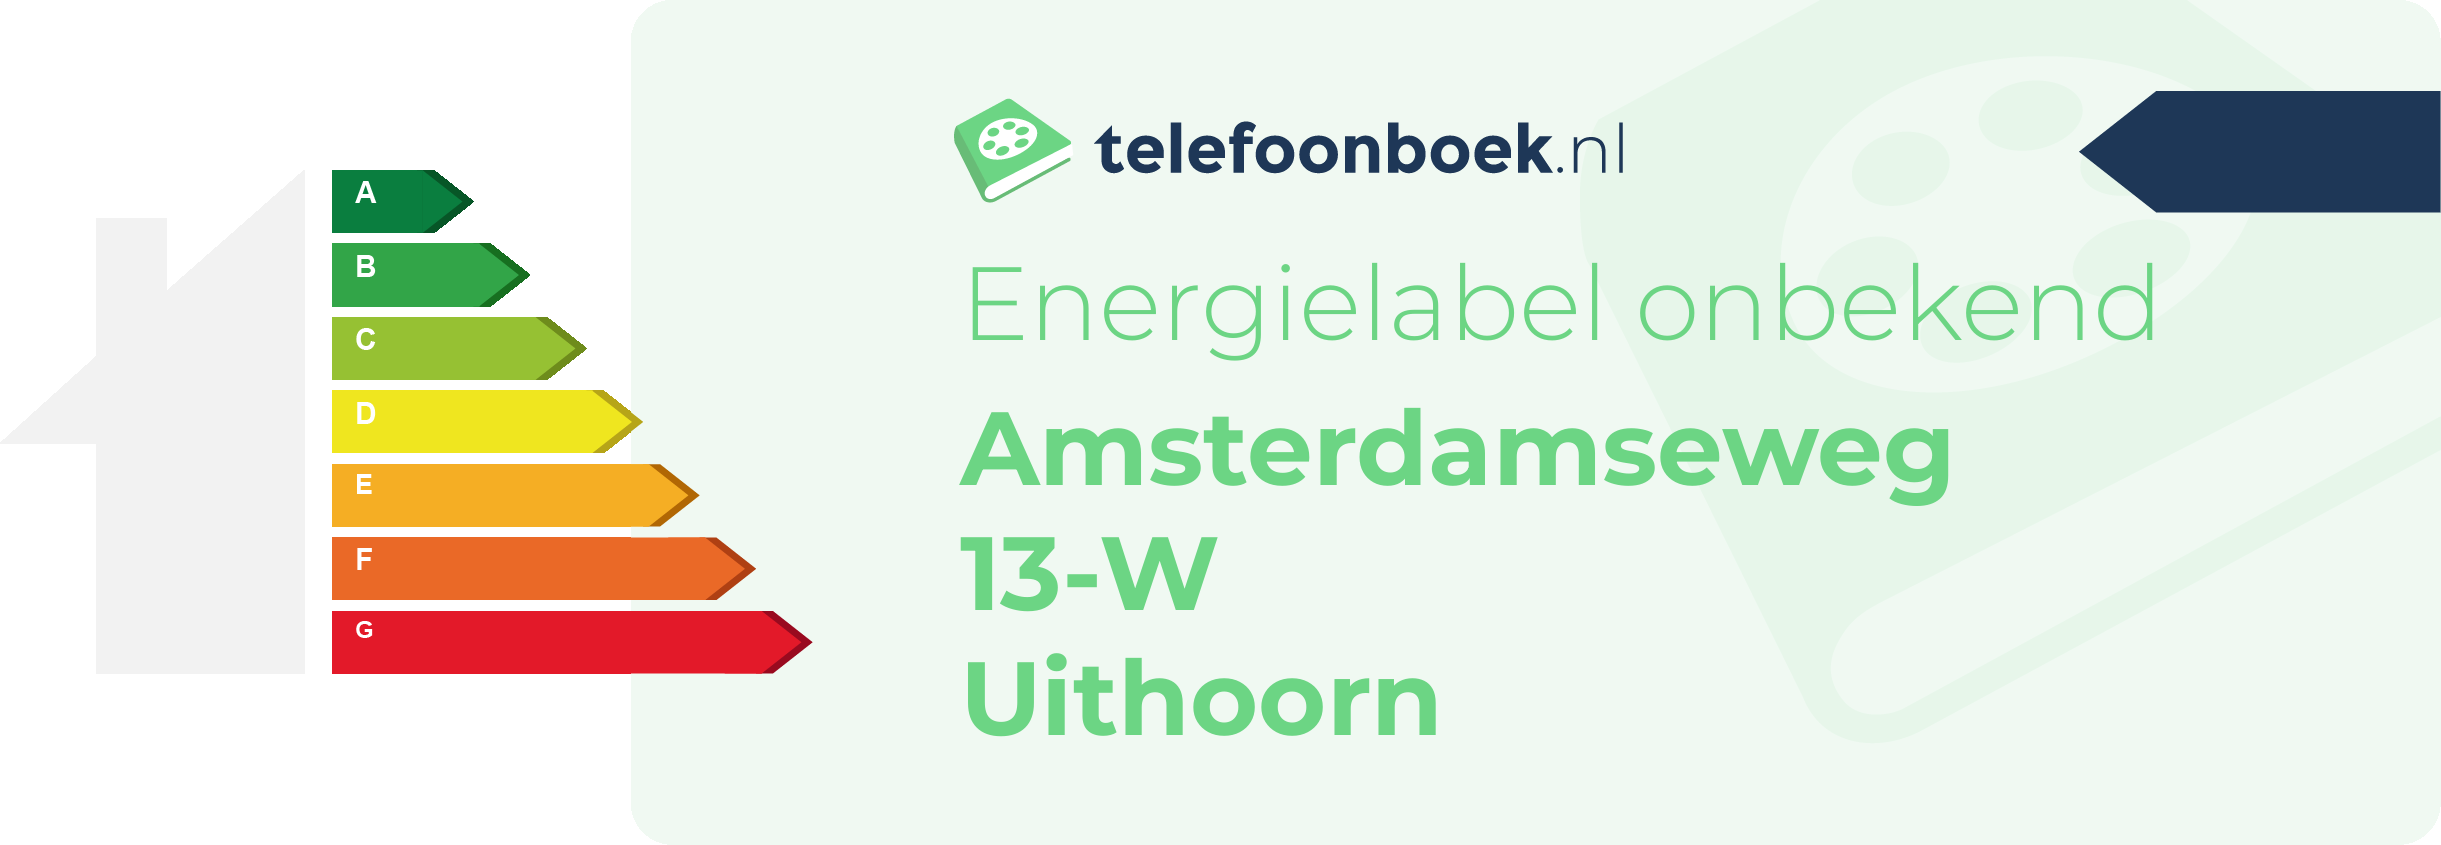 Energielabel Amsterdamseweg 13-W Uithoorn